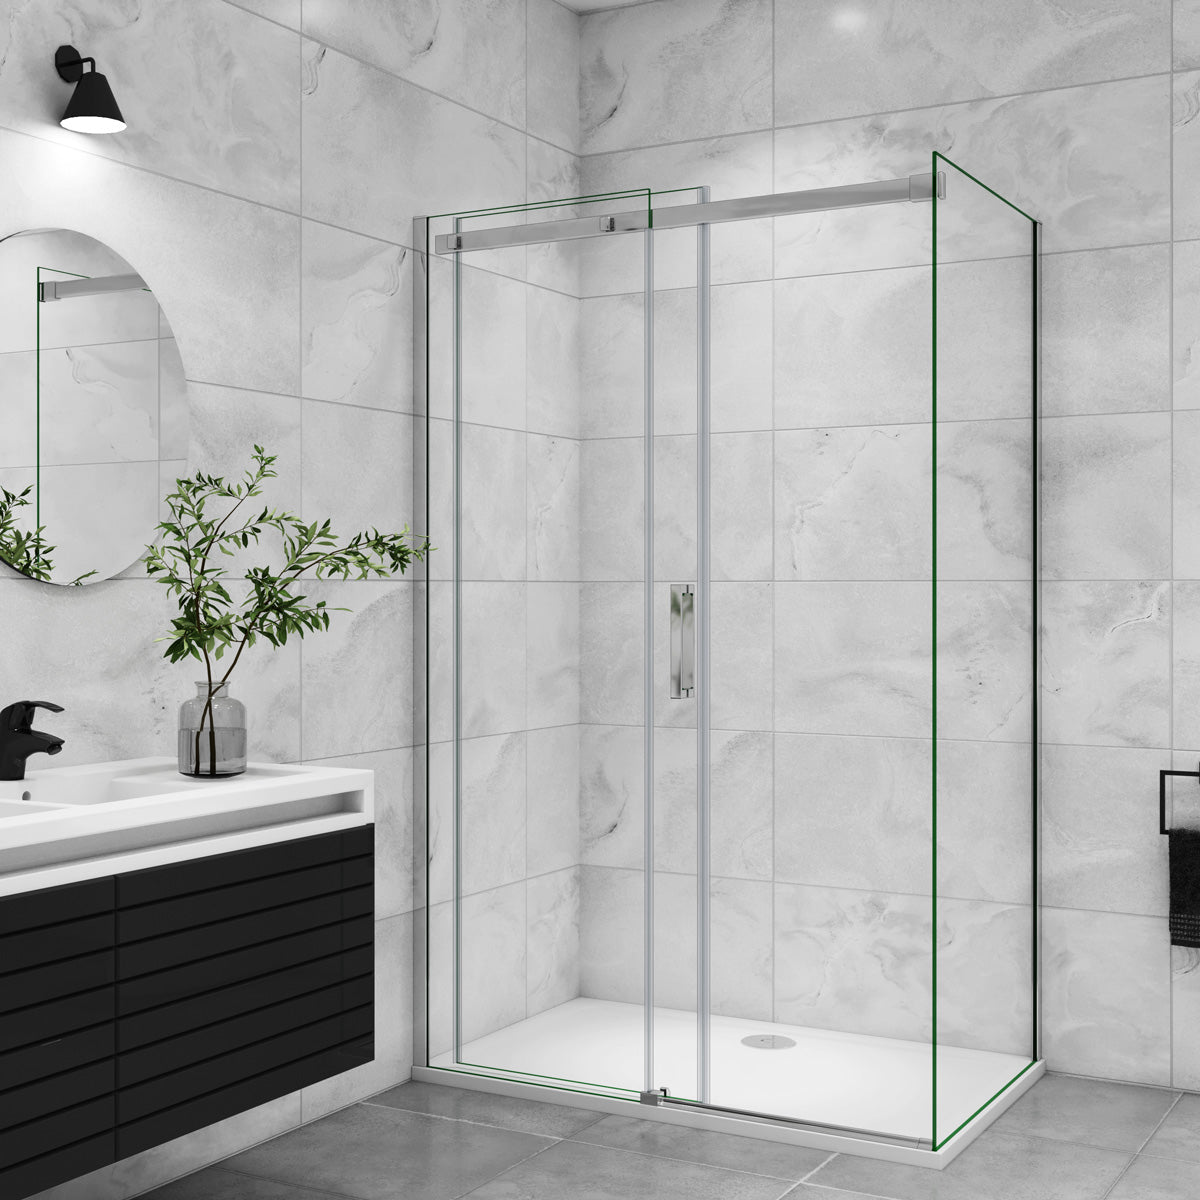 Duschtür+Seitenwand Duschkabine 160x100 cm Glasstärke 8mm Schiebetür Dusche Duschabtrennung